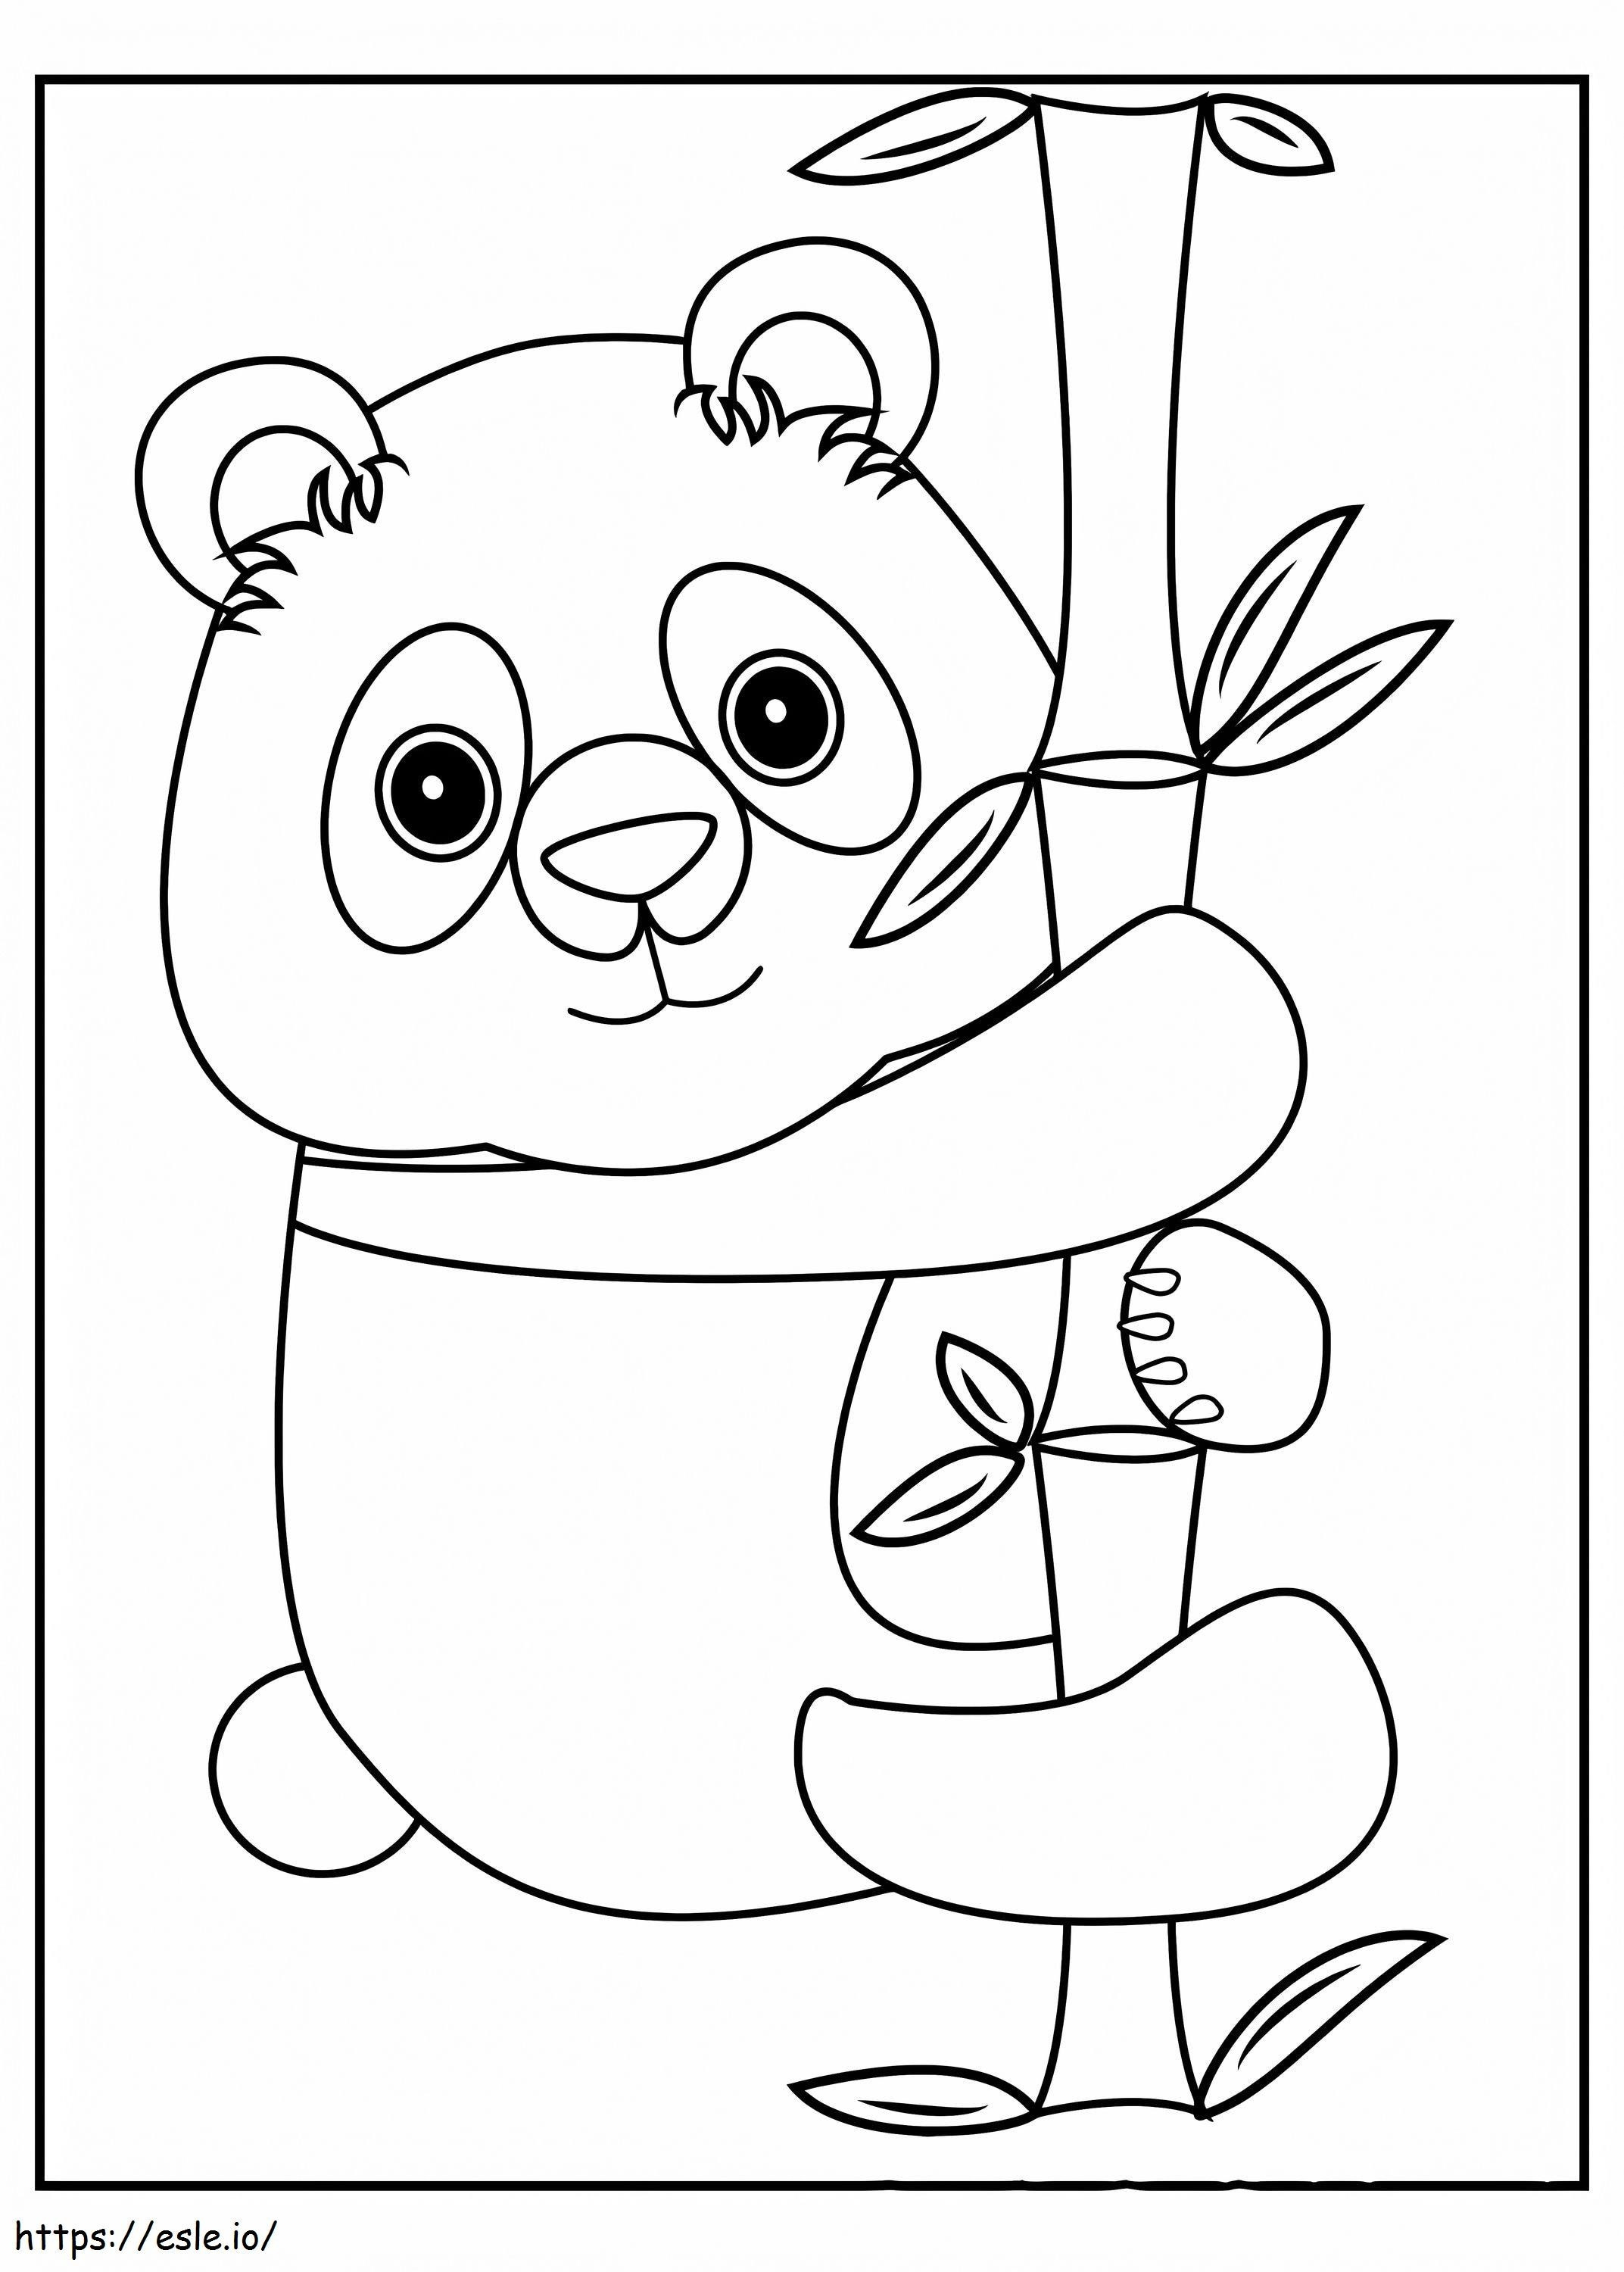 Panda Hugs A Bamboo coloring page